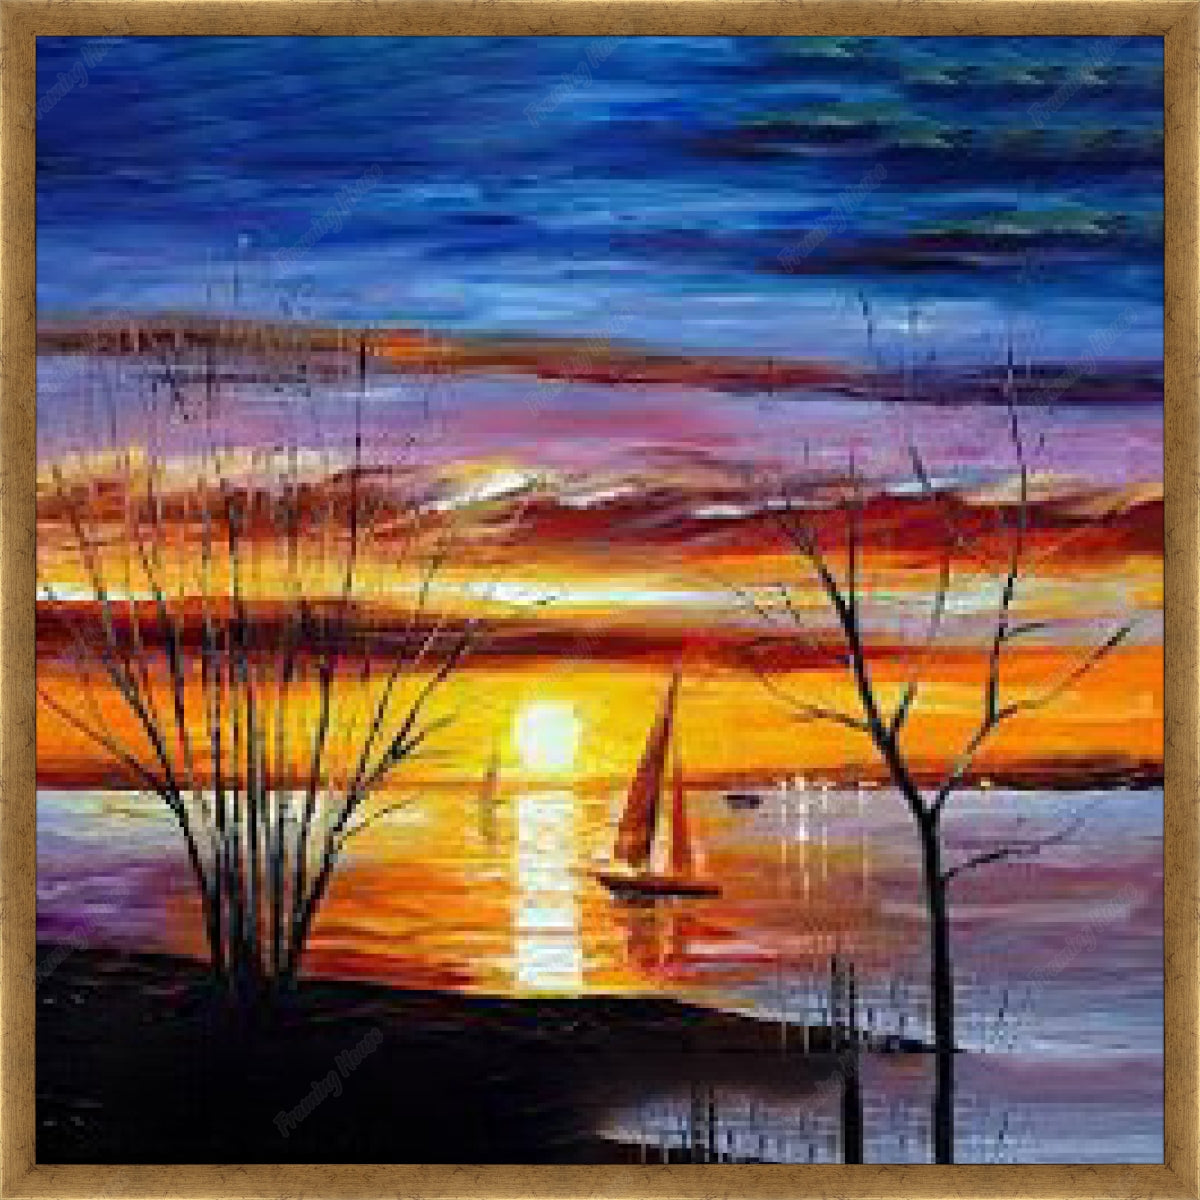 Sunrise paintings